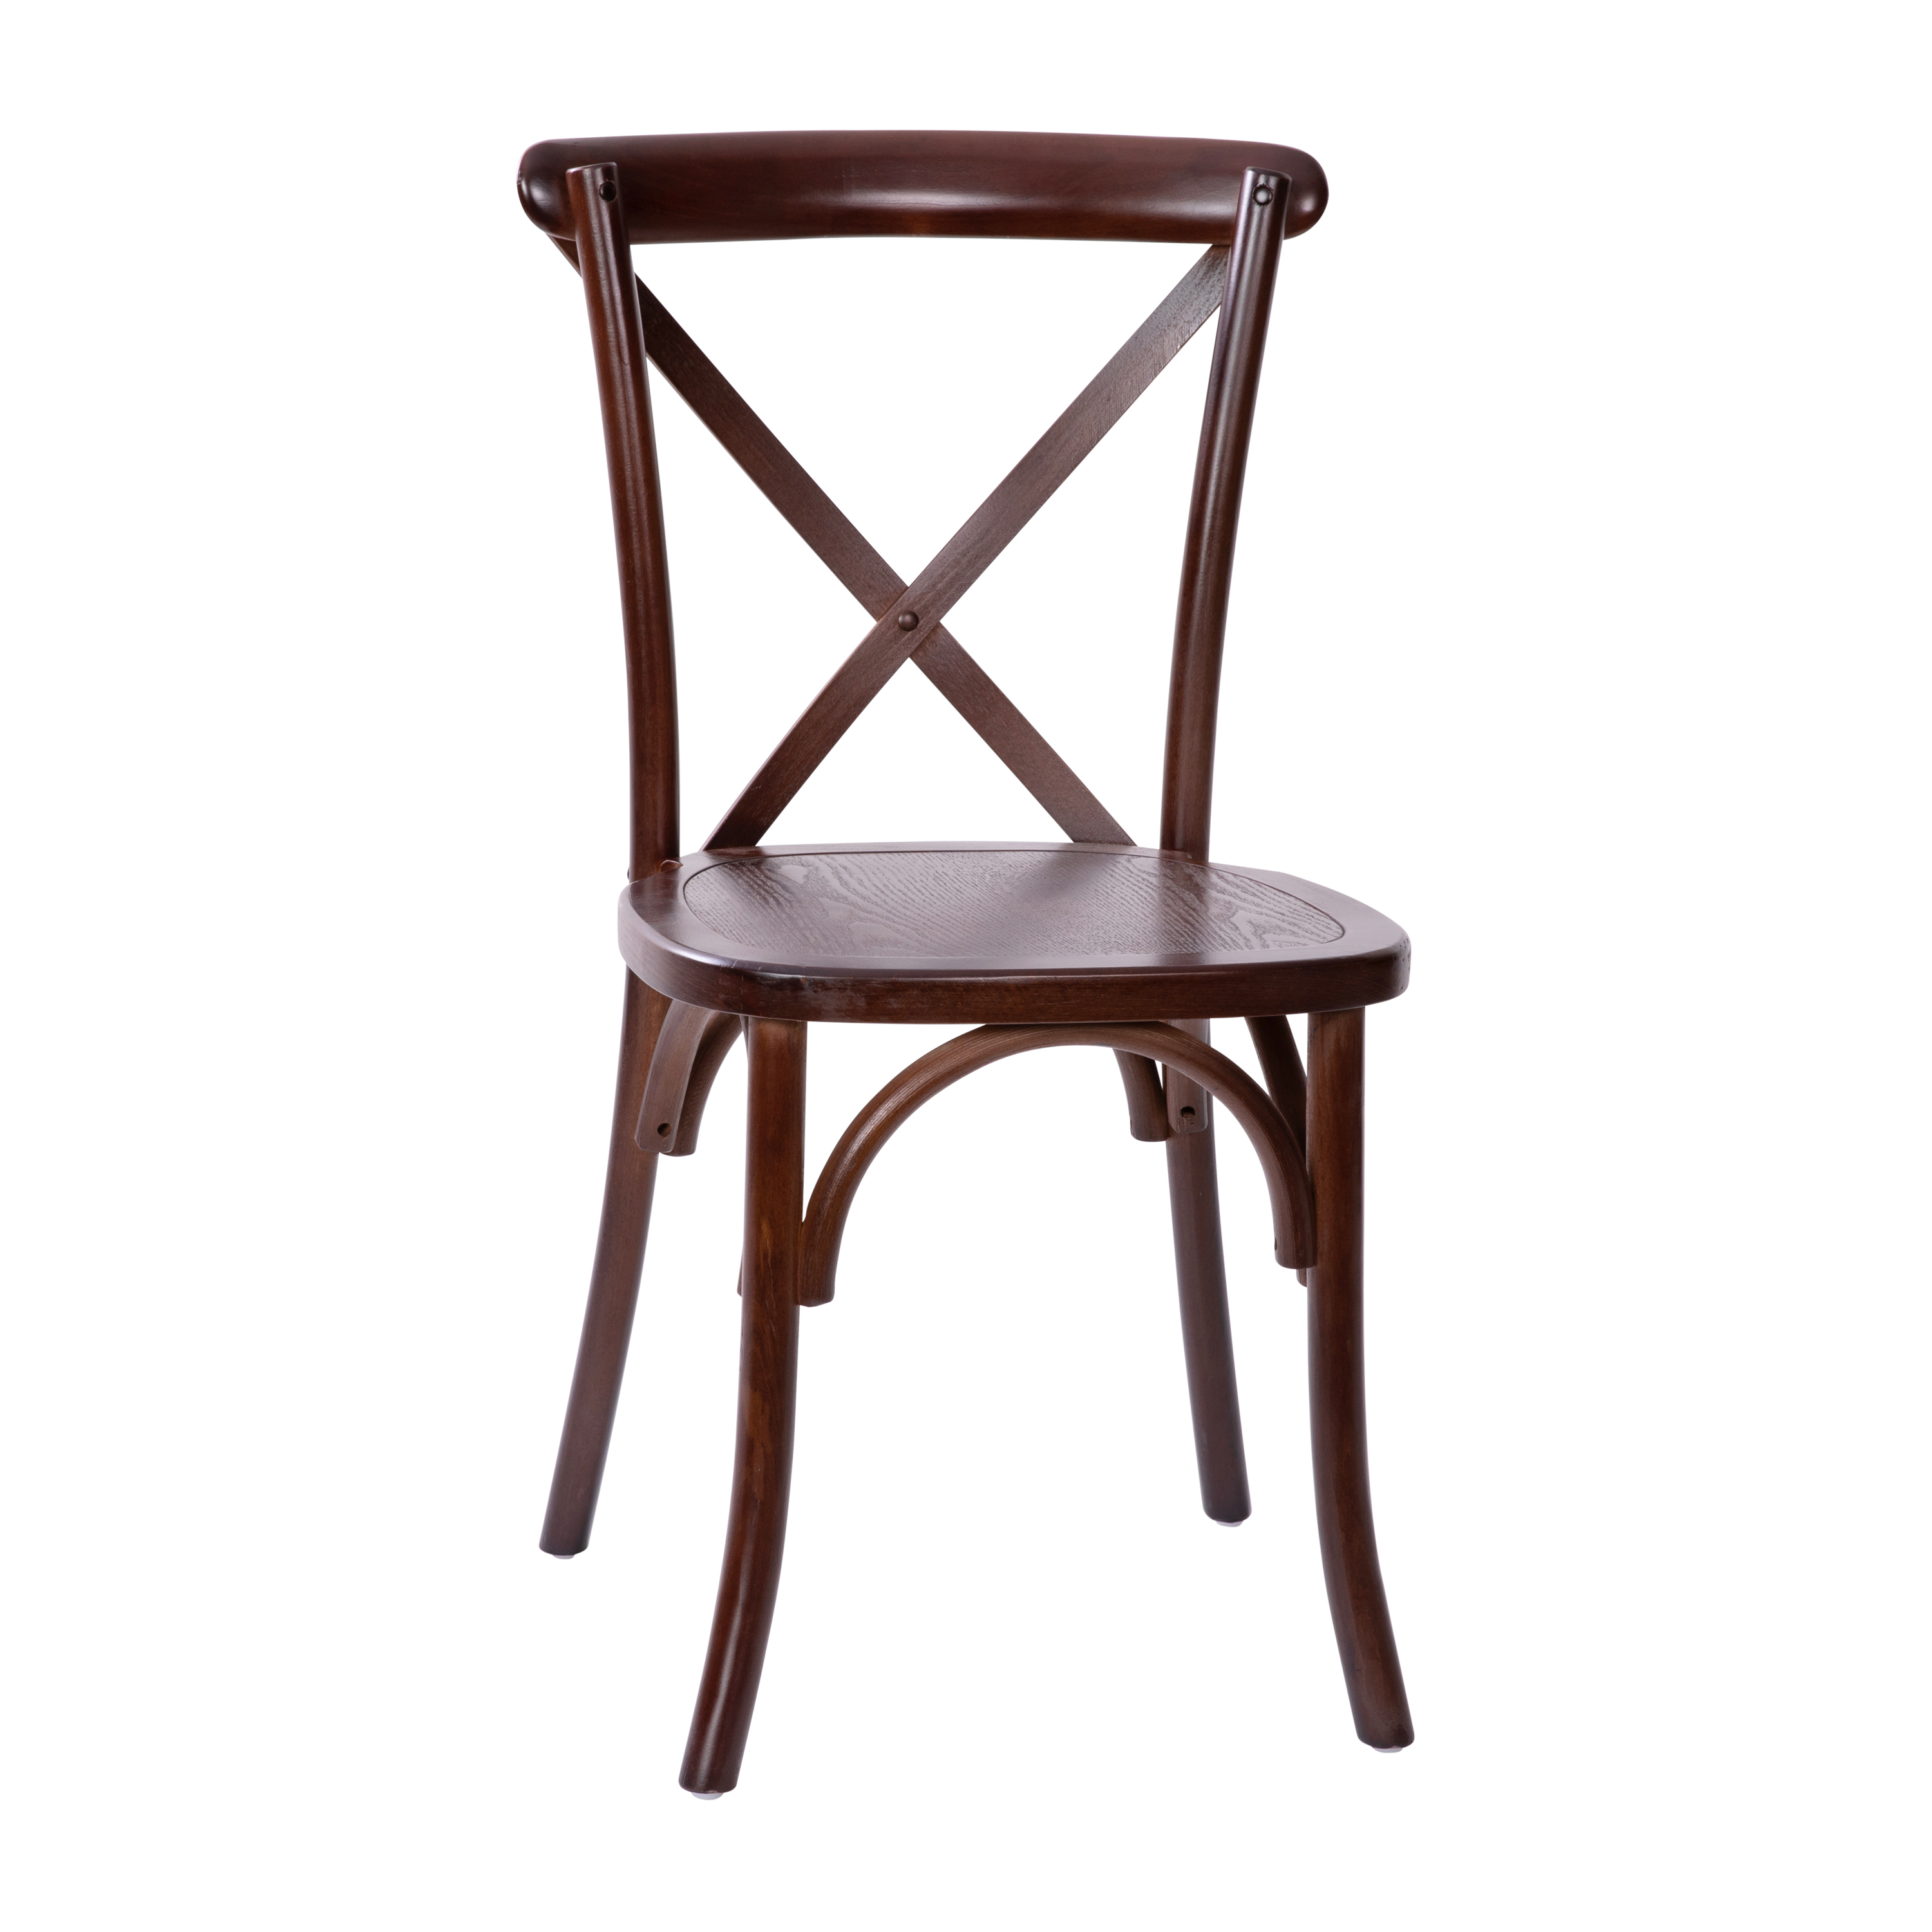 Flash Furniture X-BACK-W Advantage Walnut X-Back Chair